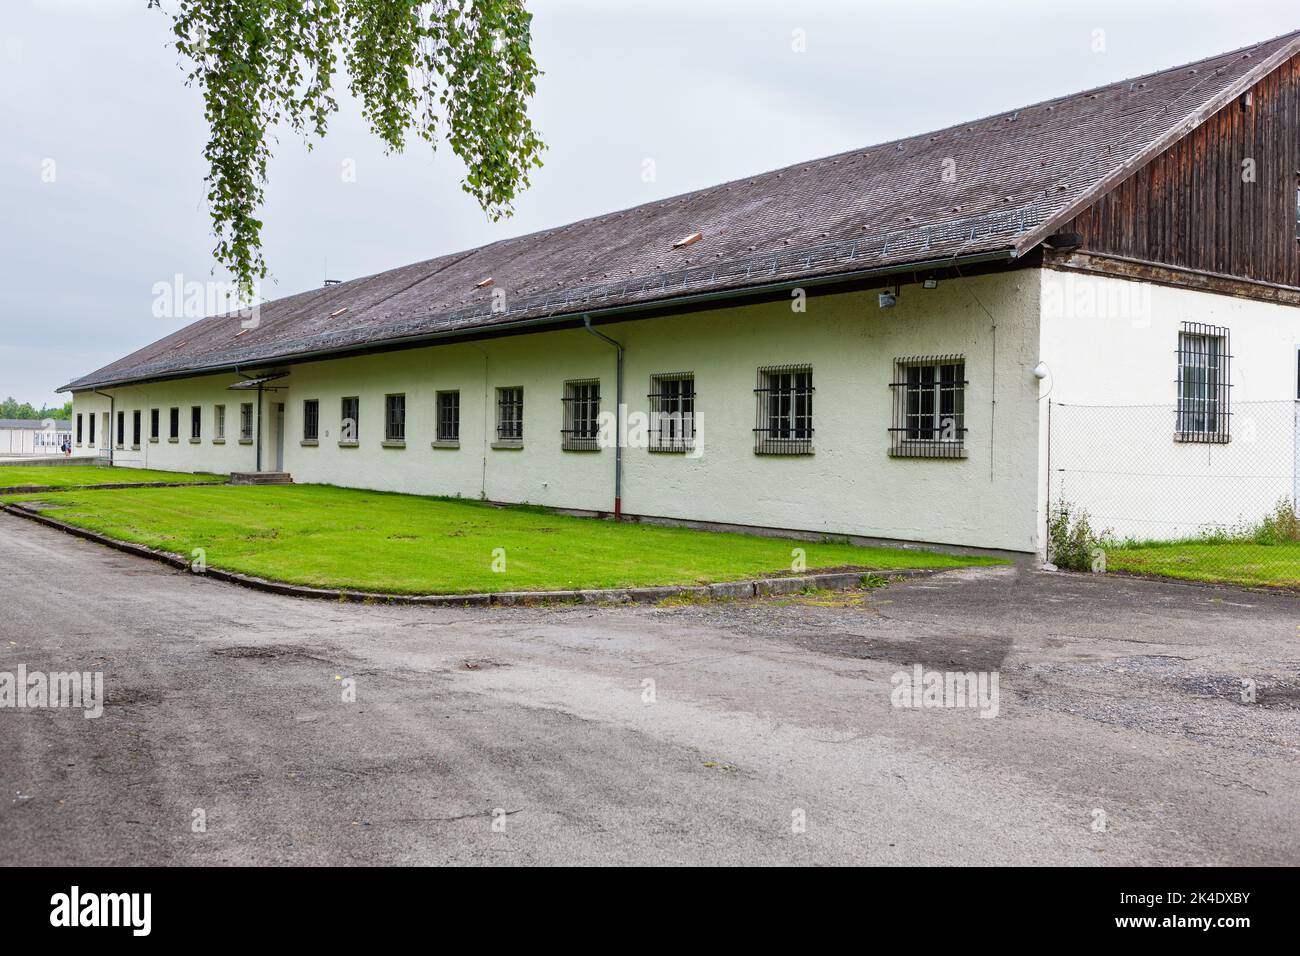 Dachau, Deutschland - 4. Juli 2011 : Gedenkstätte Konzentrationslager Dachau. Nazi-Konzentrationslager von 1933 bis 1945. Zentrales Verwaltungsgebäude w Stockfoto